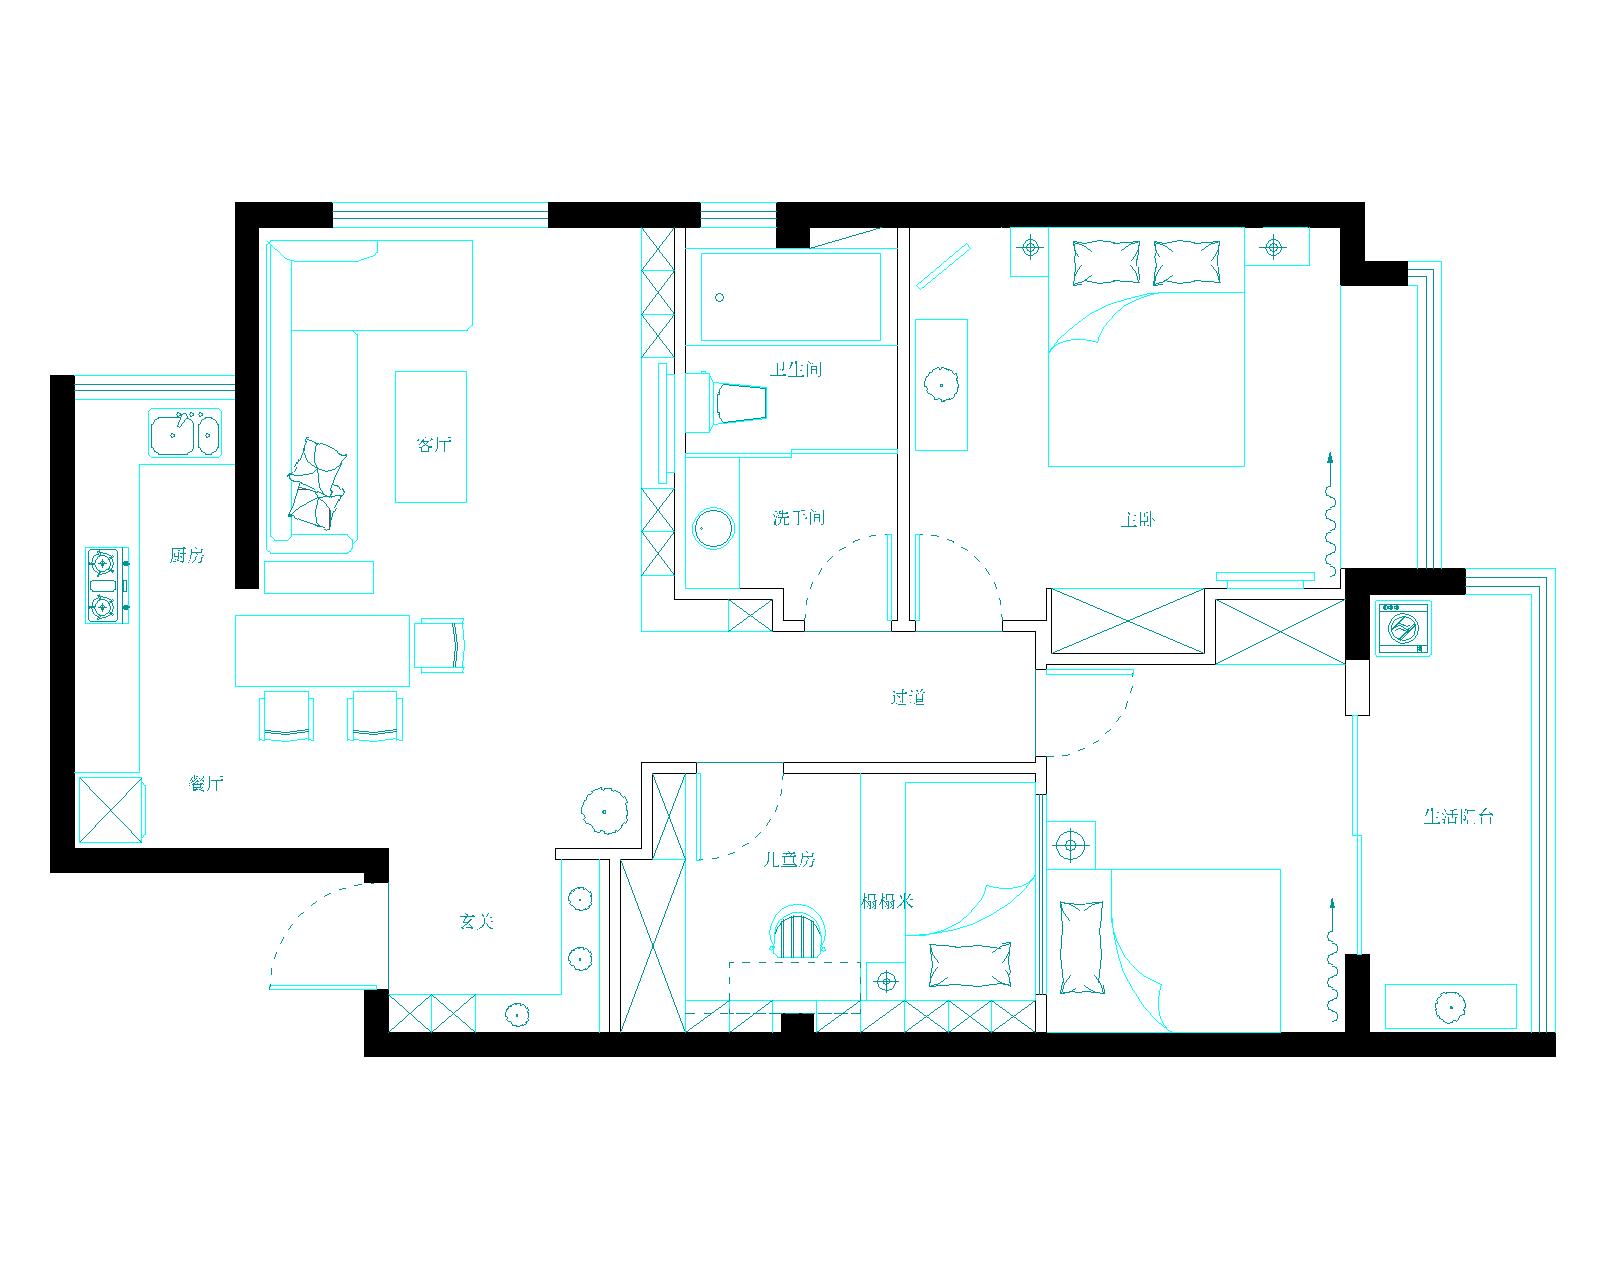 这是一套3室2厅的户型。简单的主题格调但是又增加了许多线条感的元素，以沉稳的咖色，黑色，白色做及色调，整体效果，庄重而又内敛，含蓄而又实用。